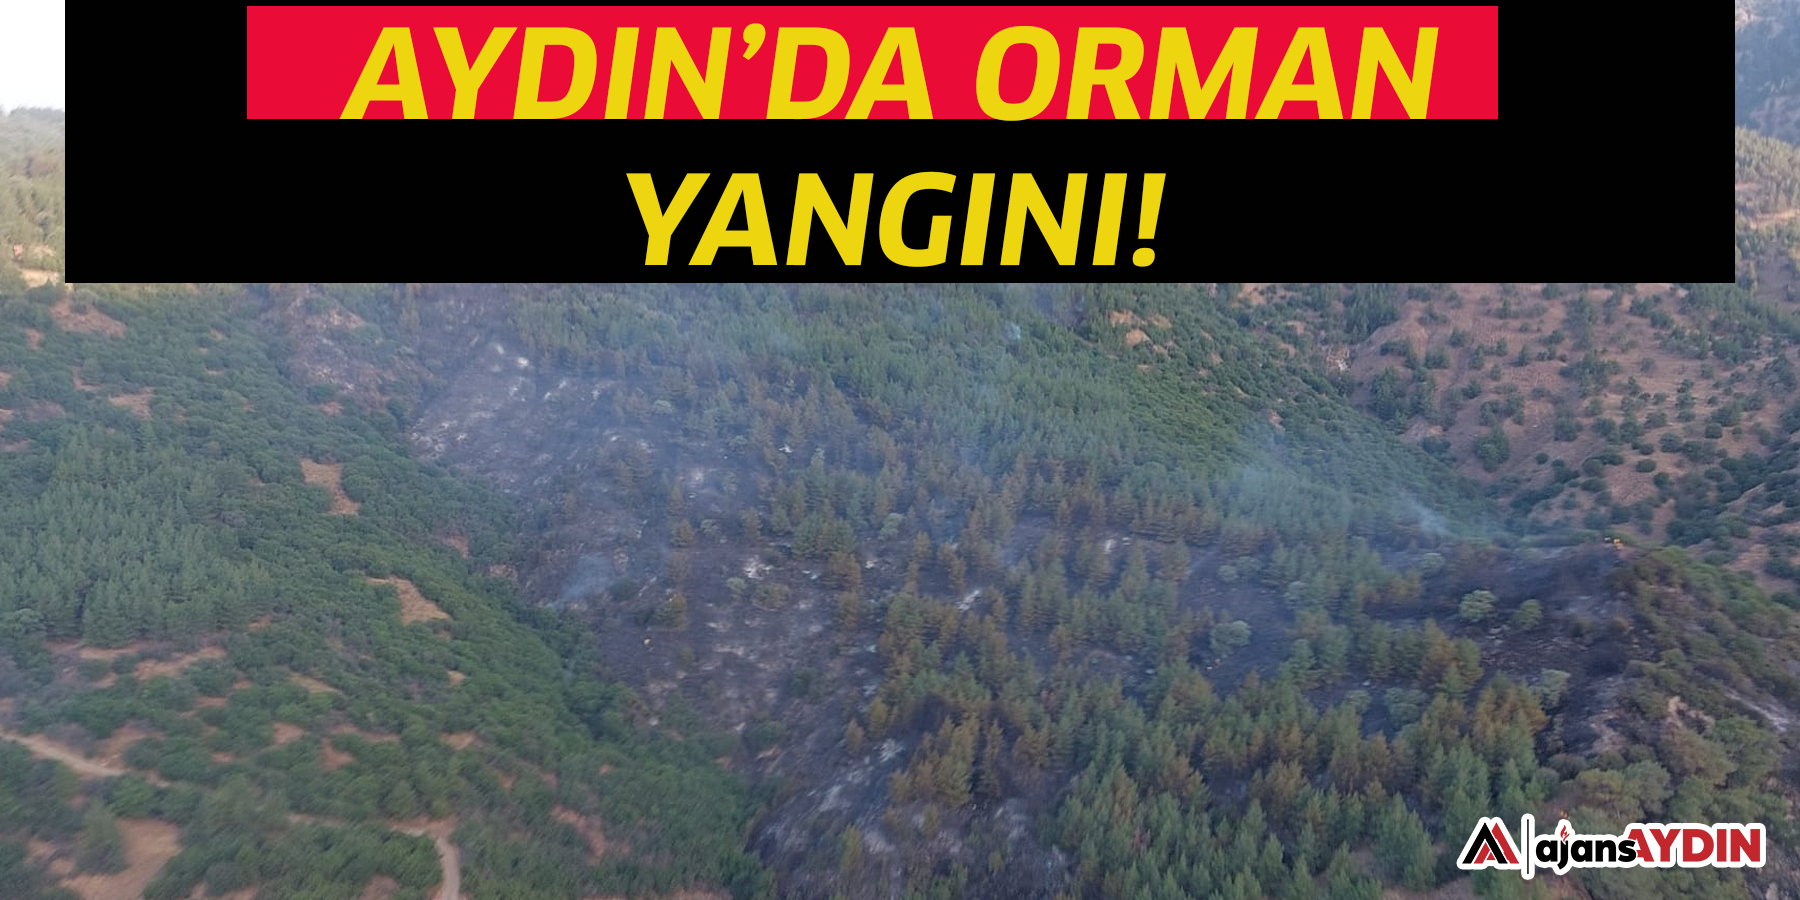 Aydın’da orman yangını!